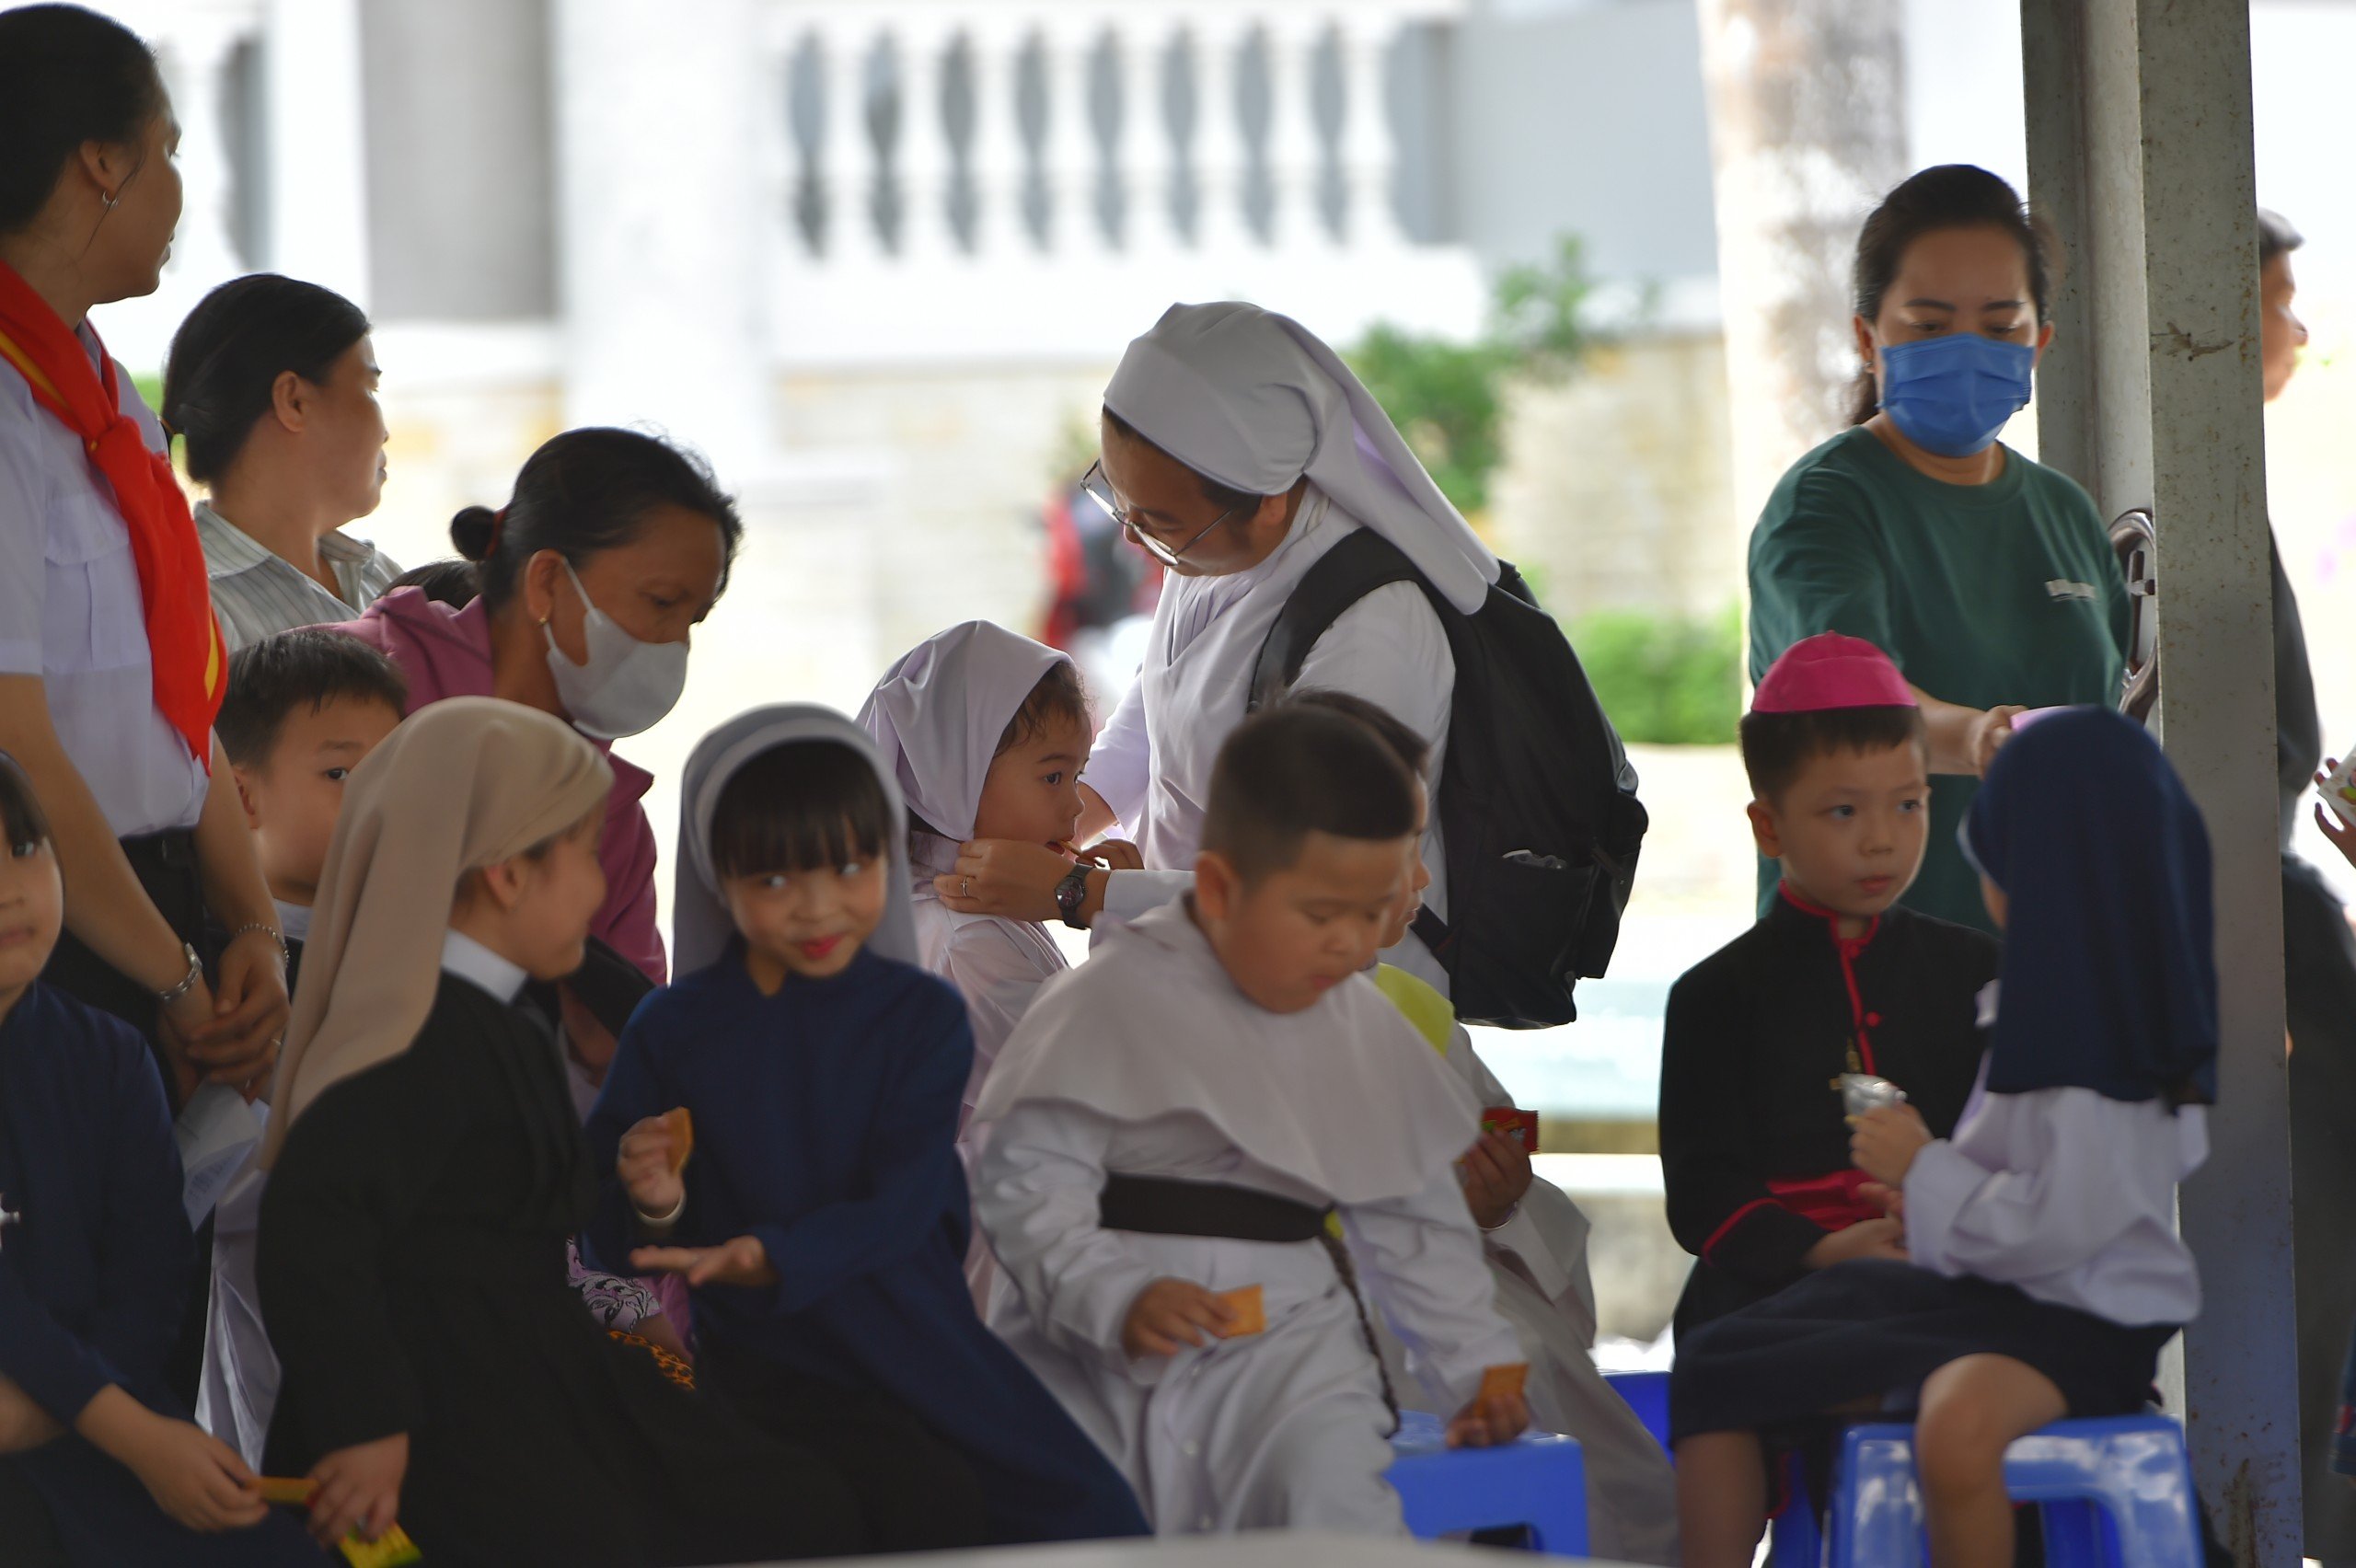 Giáo phận Phú Cường: Ngày cầu nguyện cho ơn thiên triệu  tại giáo xứ Dầu Tiếng